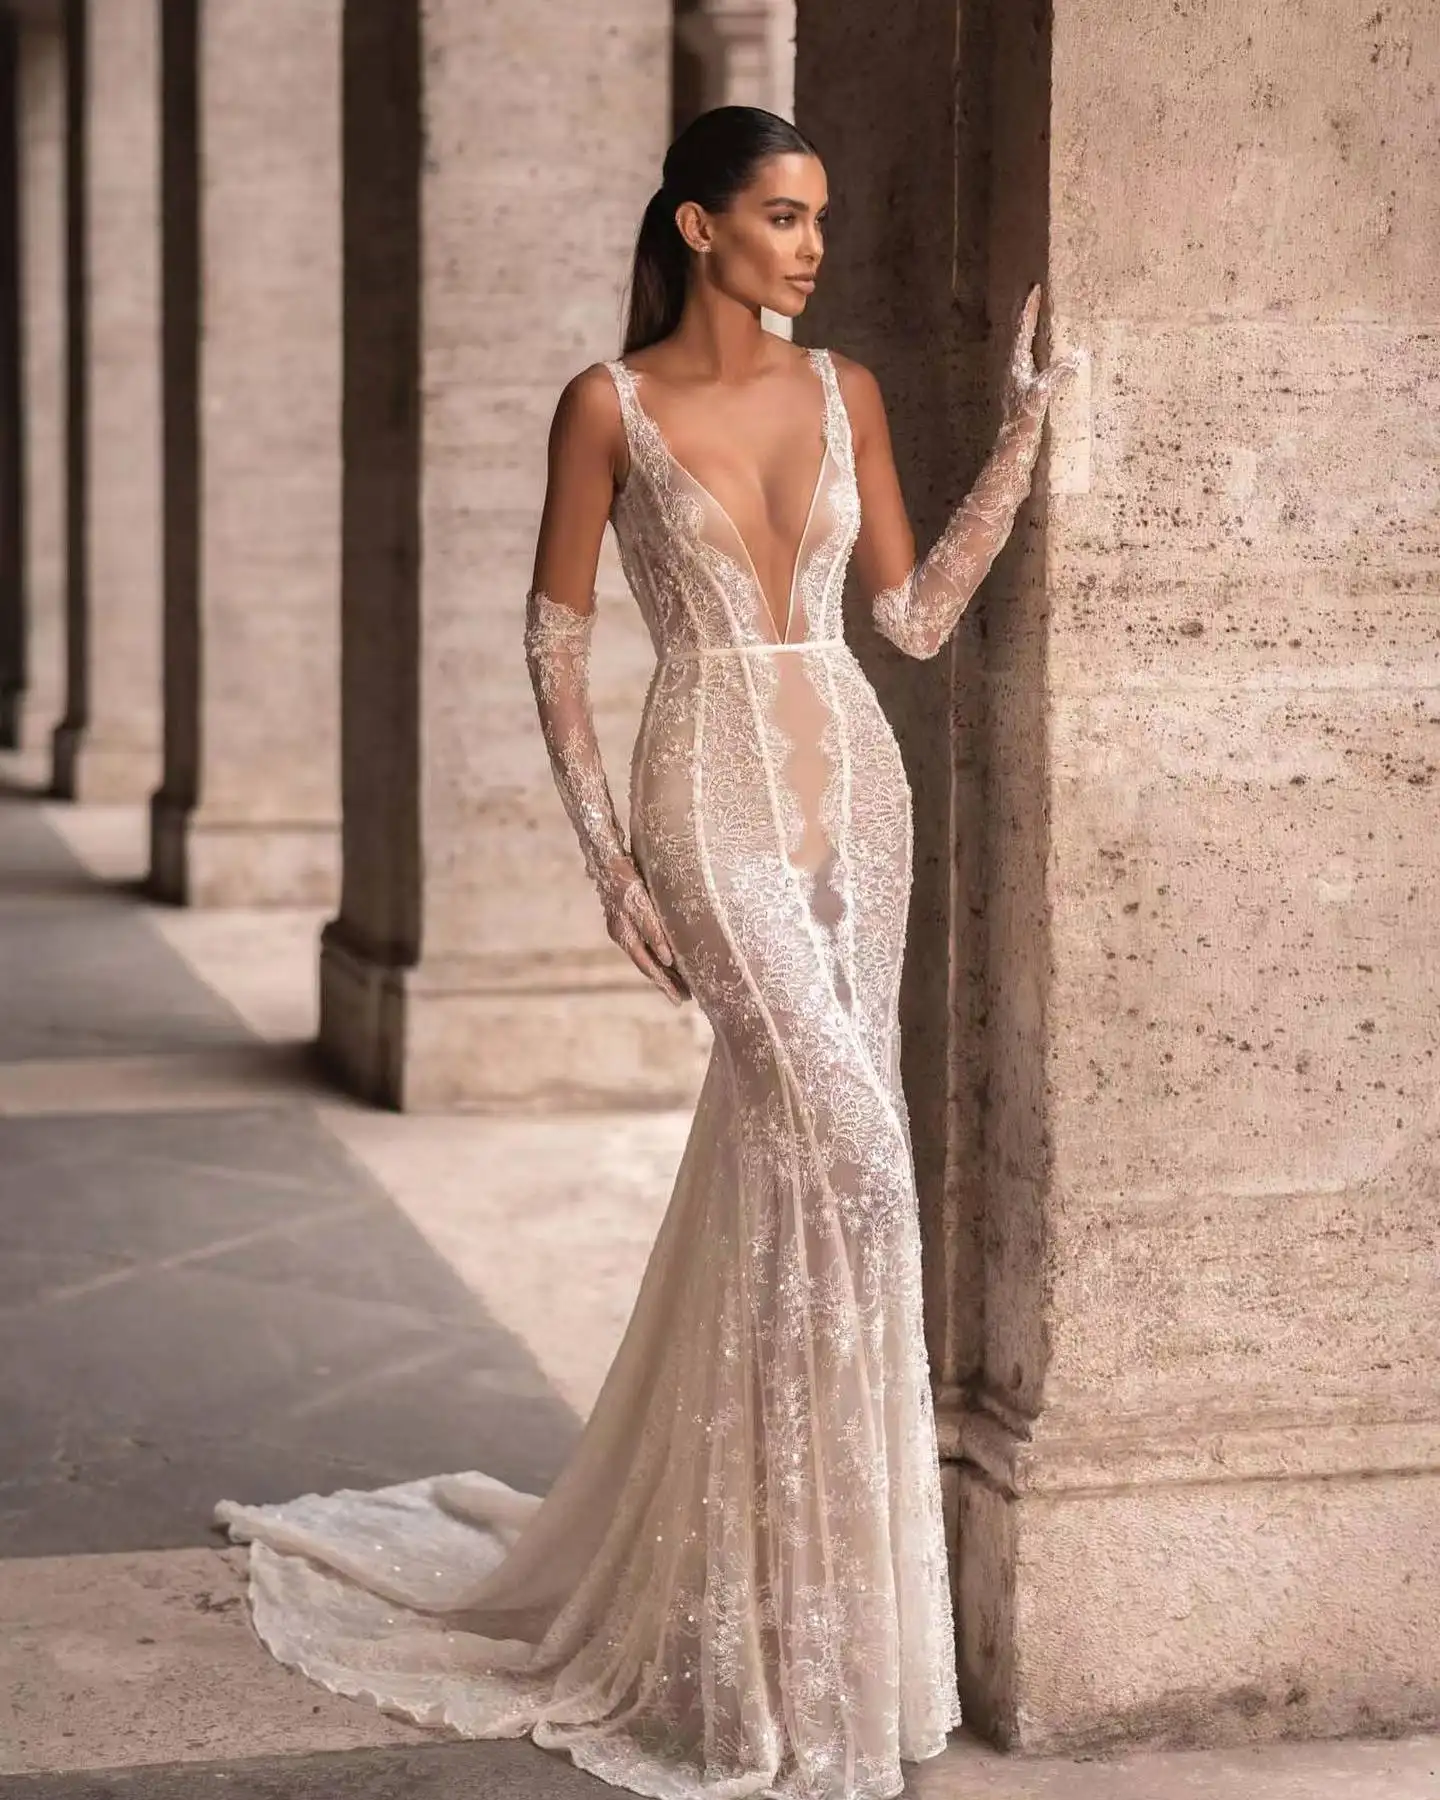 ED2562 Kimshein Bodycon Lace Slip Dress con perla Sexy Backless vestido de novia vestidos de noche mujer señora elegante